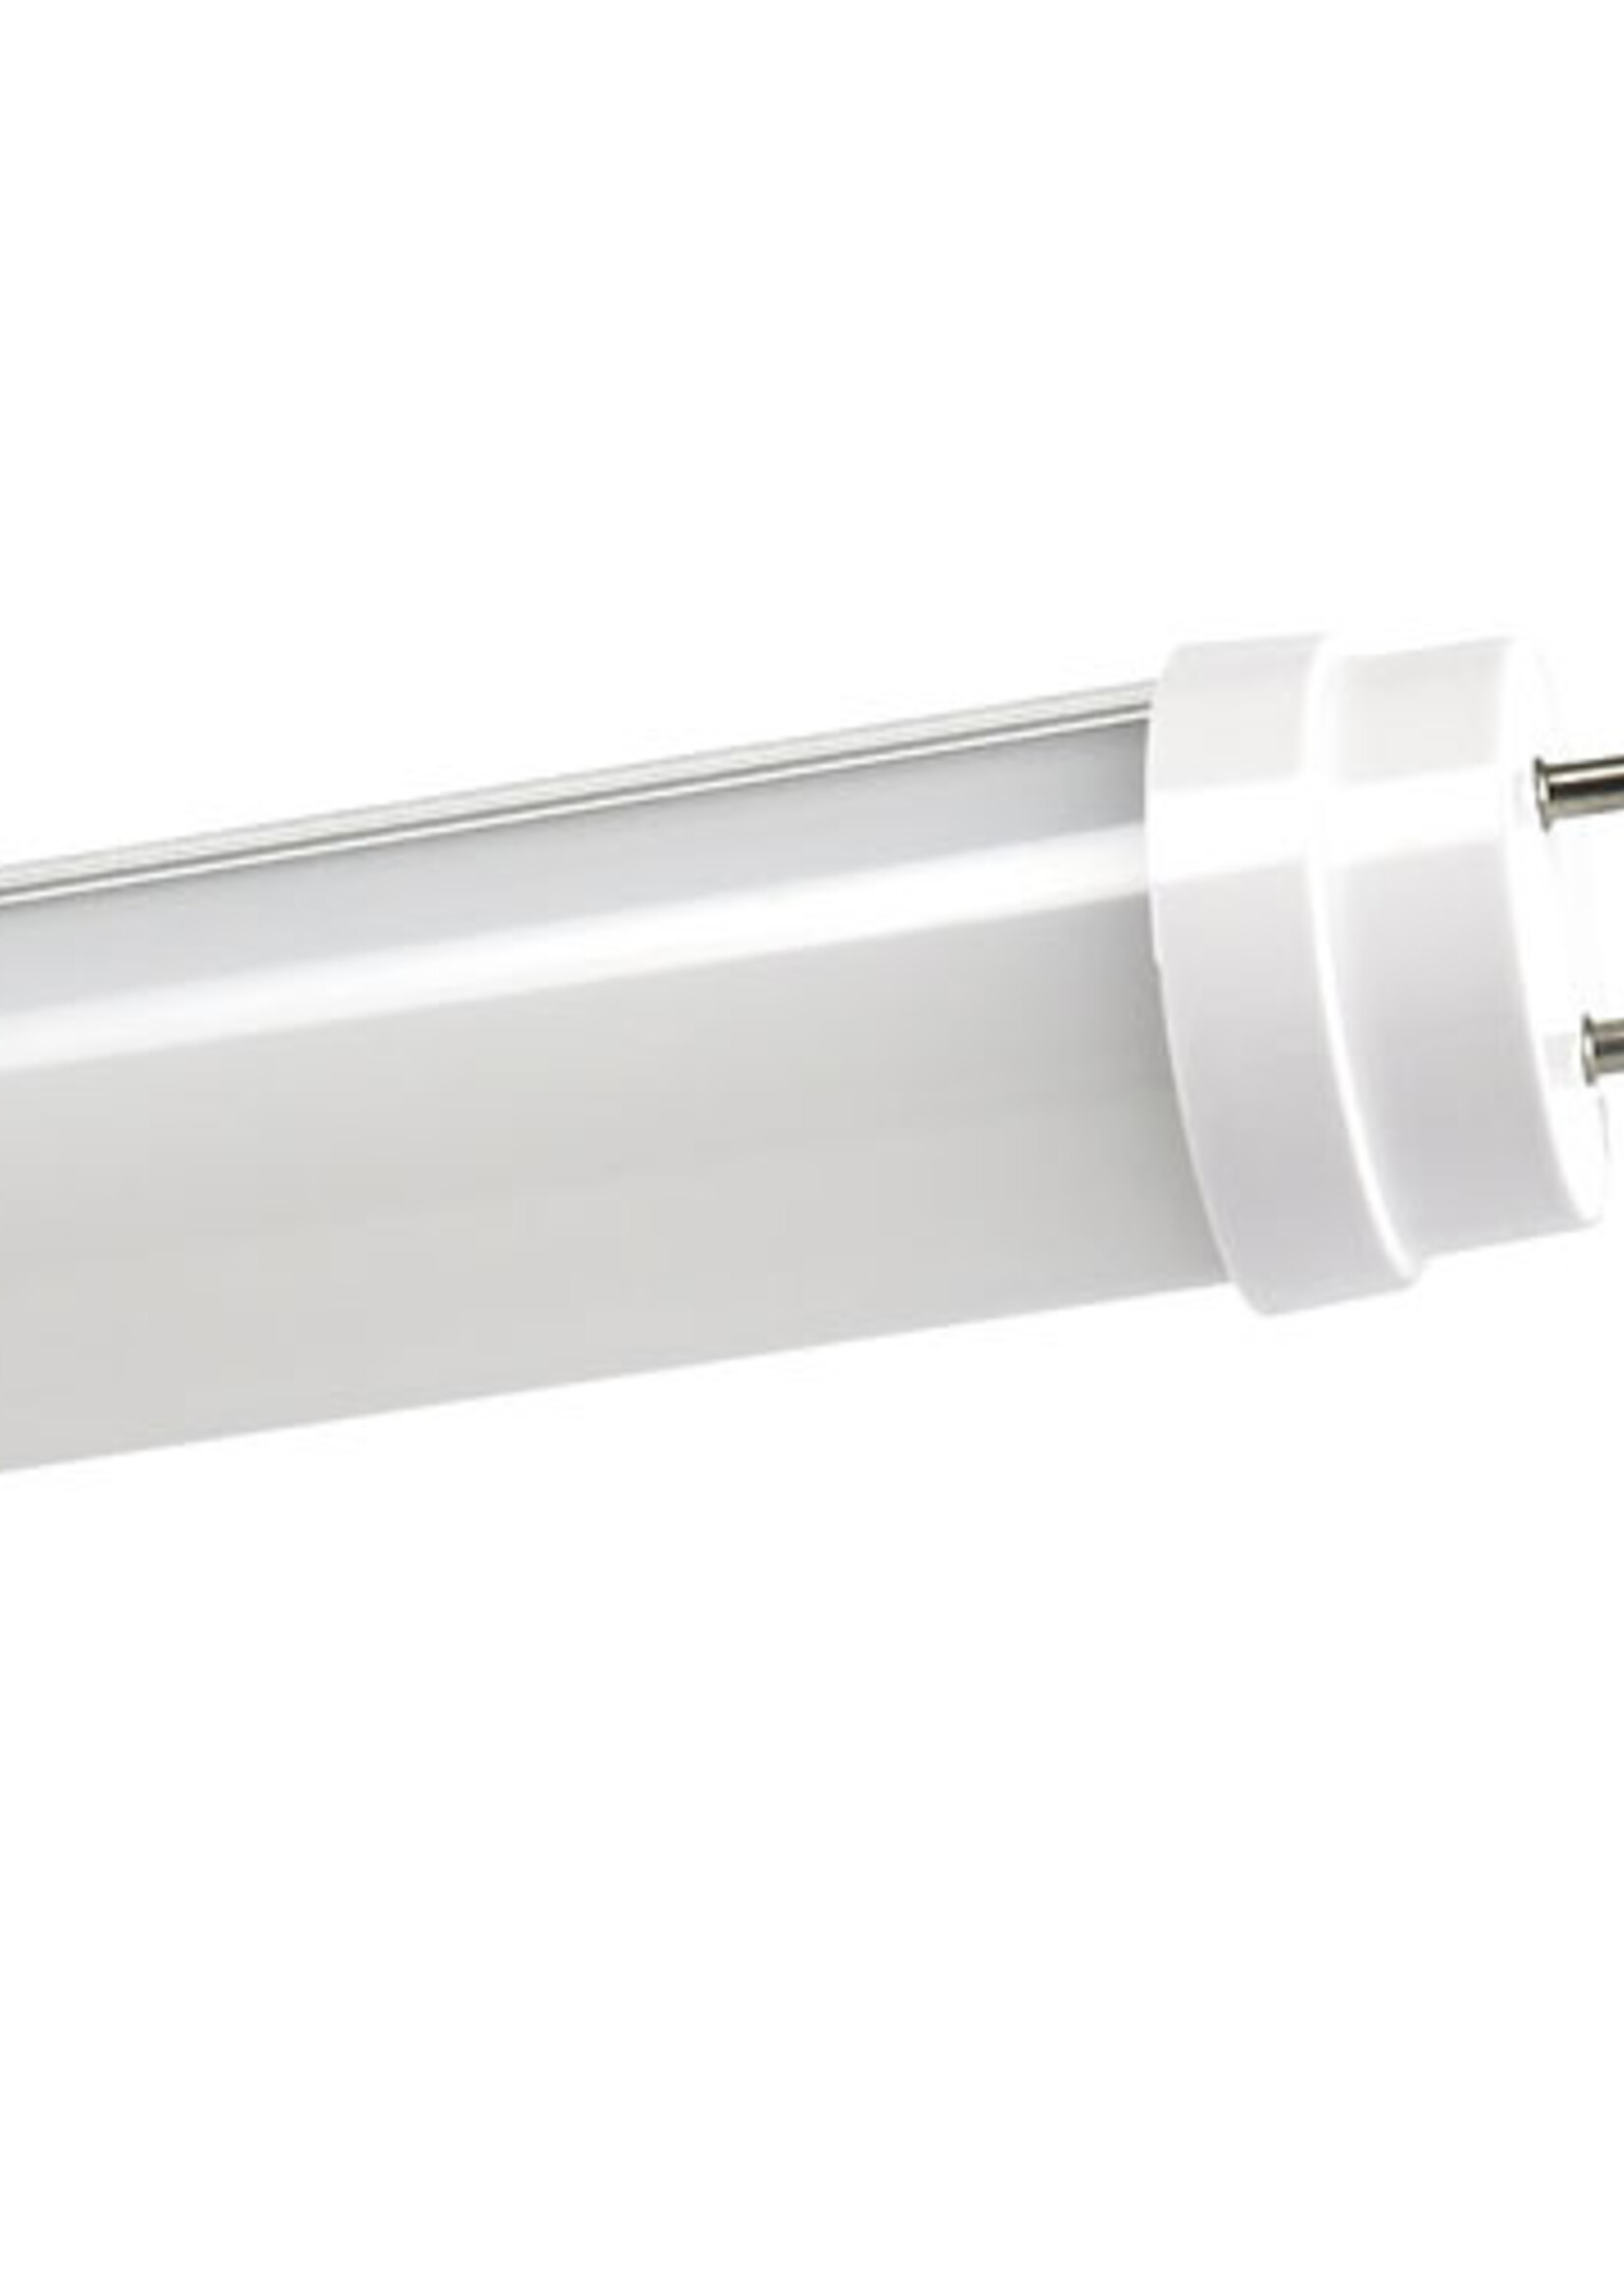 LEDWINKEL-Online LED TL Buis T8 60cm 9W 140lm/W - Pro High lumen